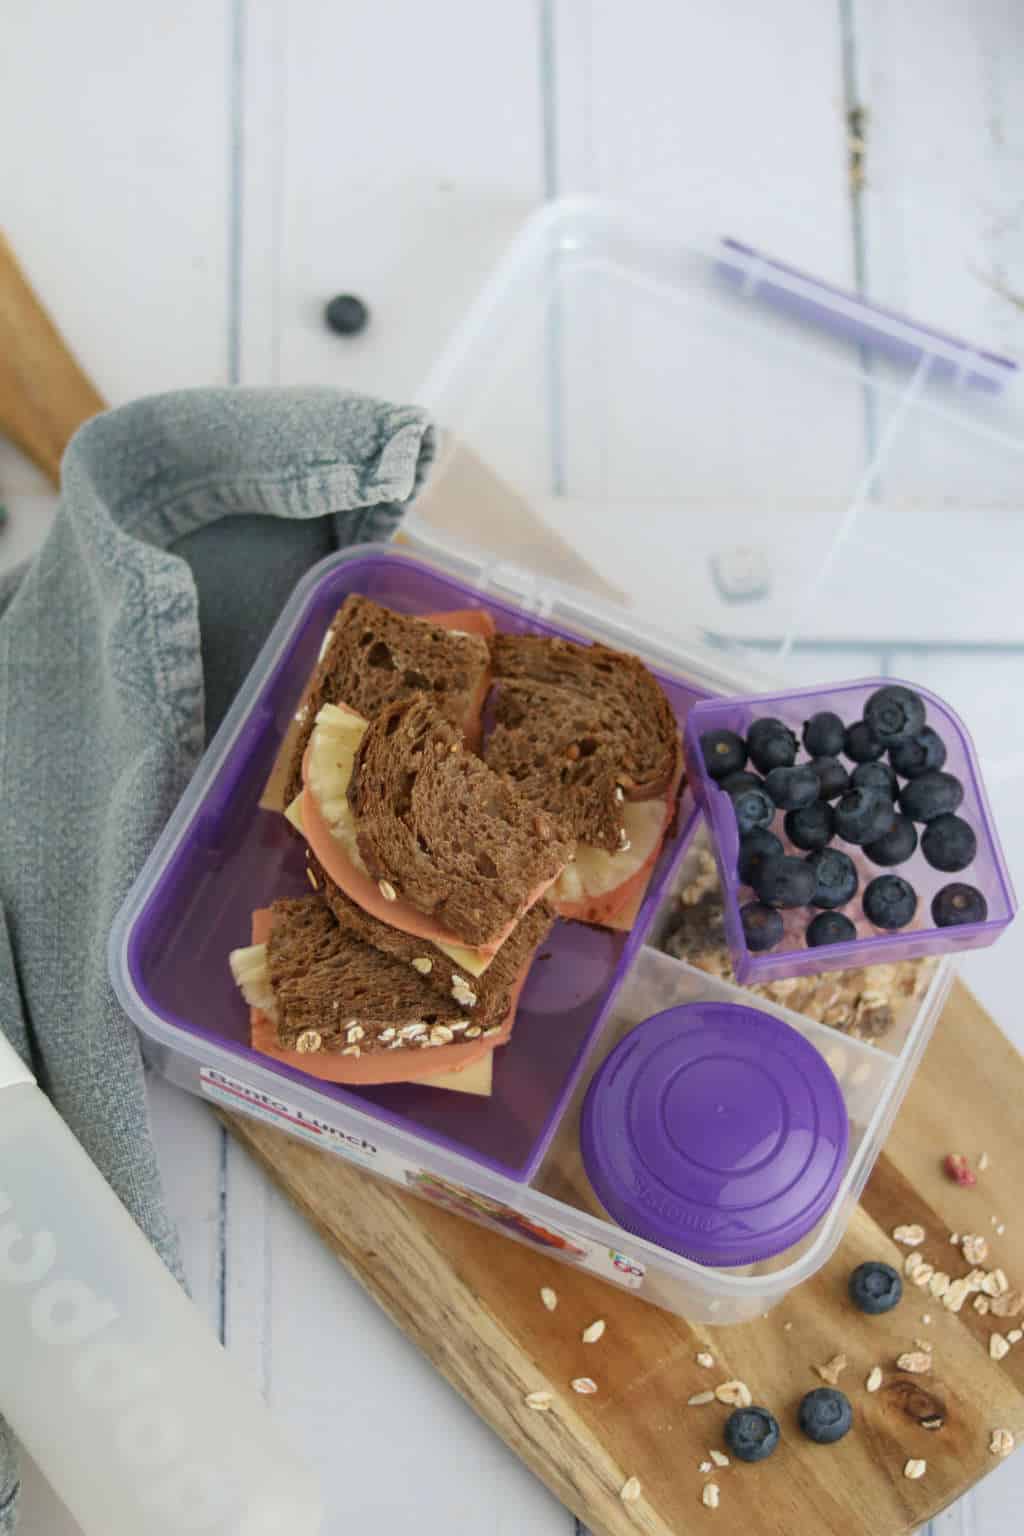 3 x vega lunchbox inspiratie voor kinderen met een vegan kip wrap met hummus, een pita pizza en een sandwich hawai. Makkelijke en snelle lunchrecepten.